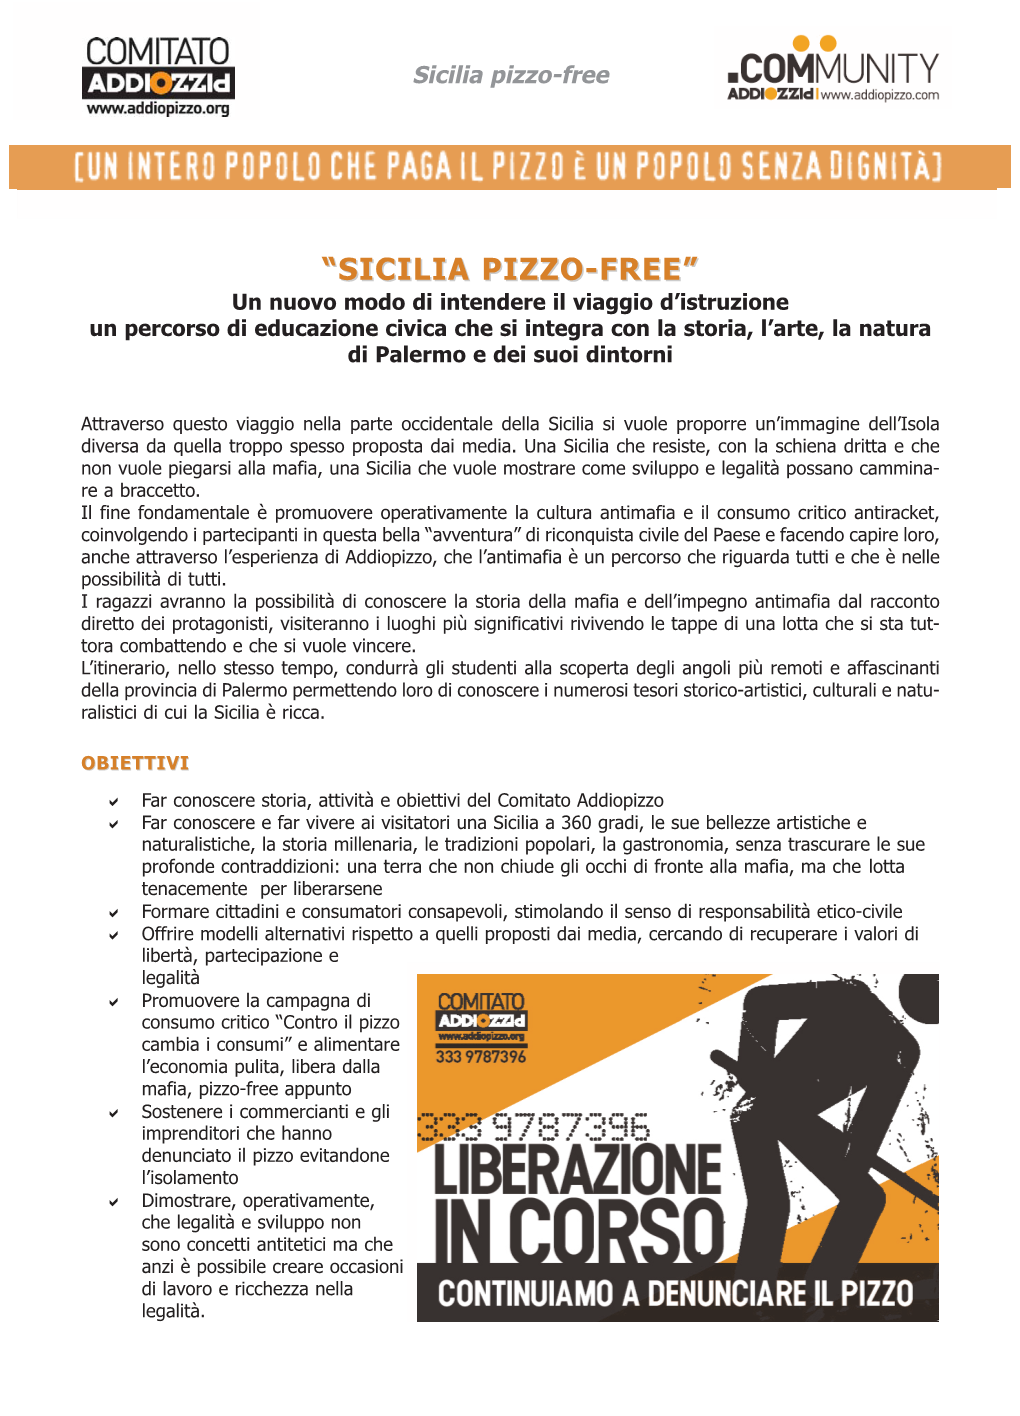 “Sicilia Pizzo-Free”